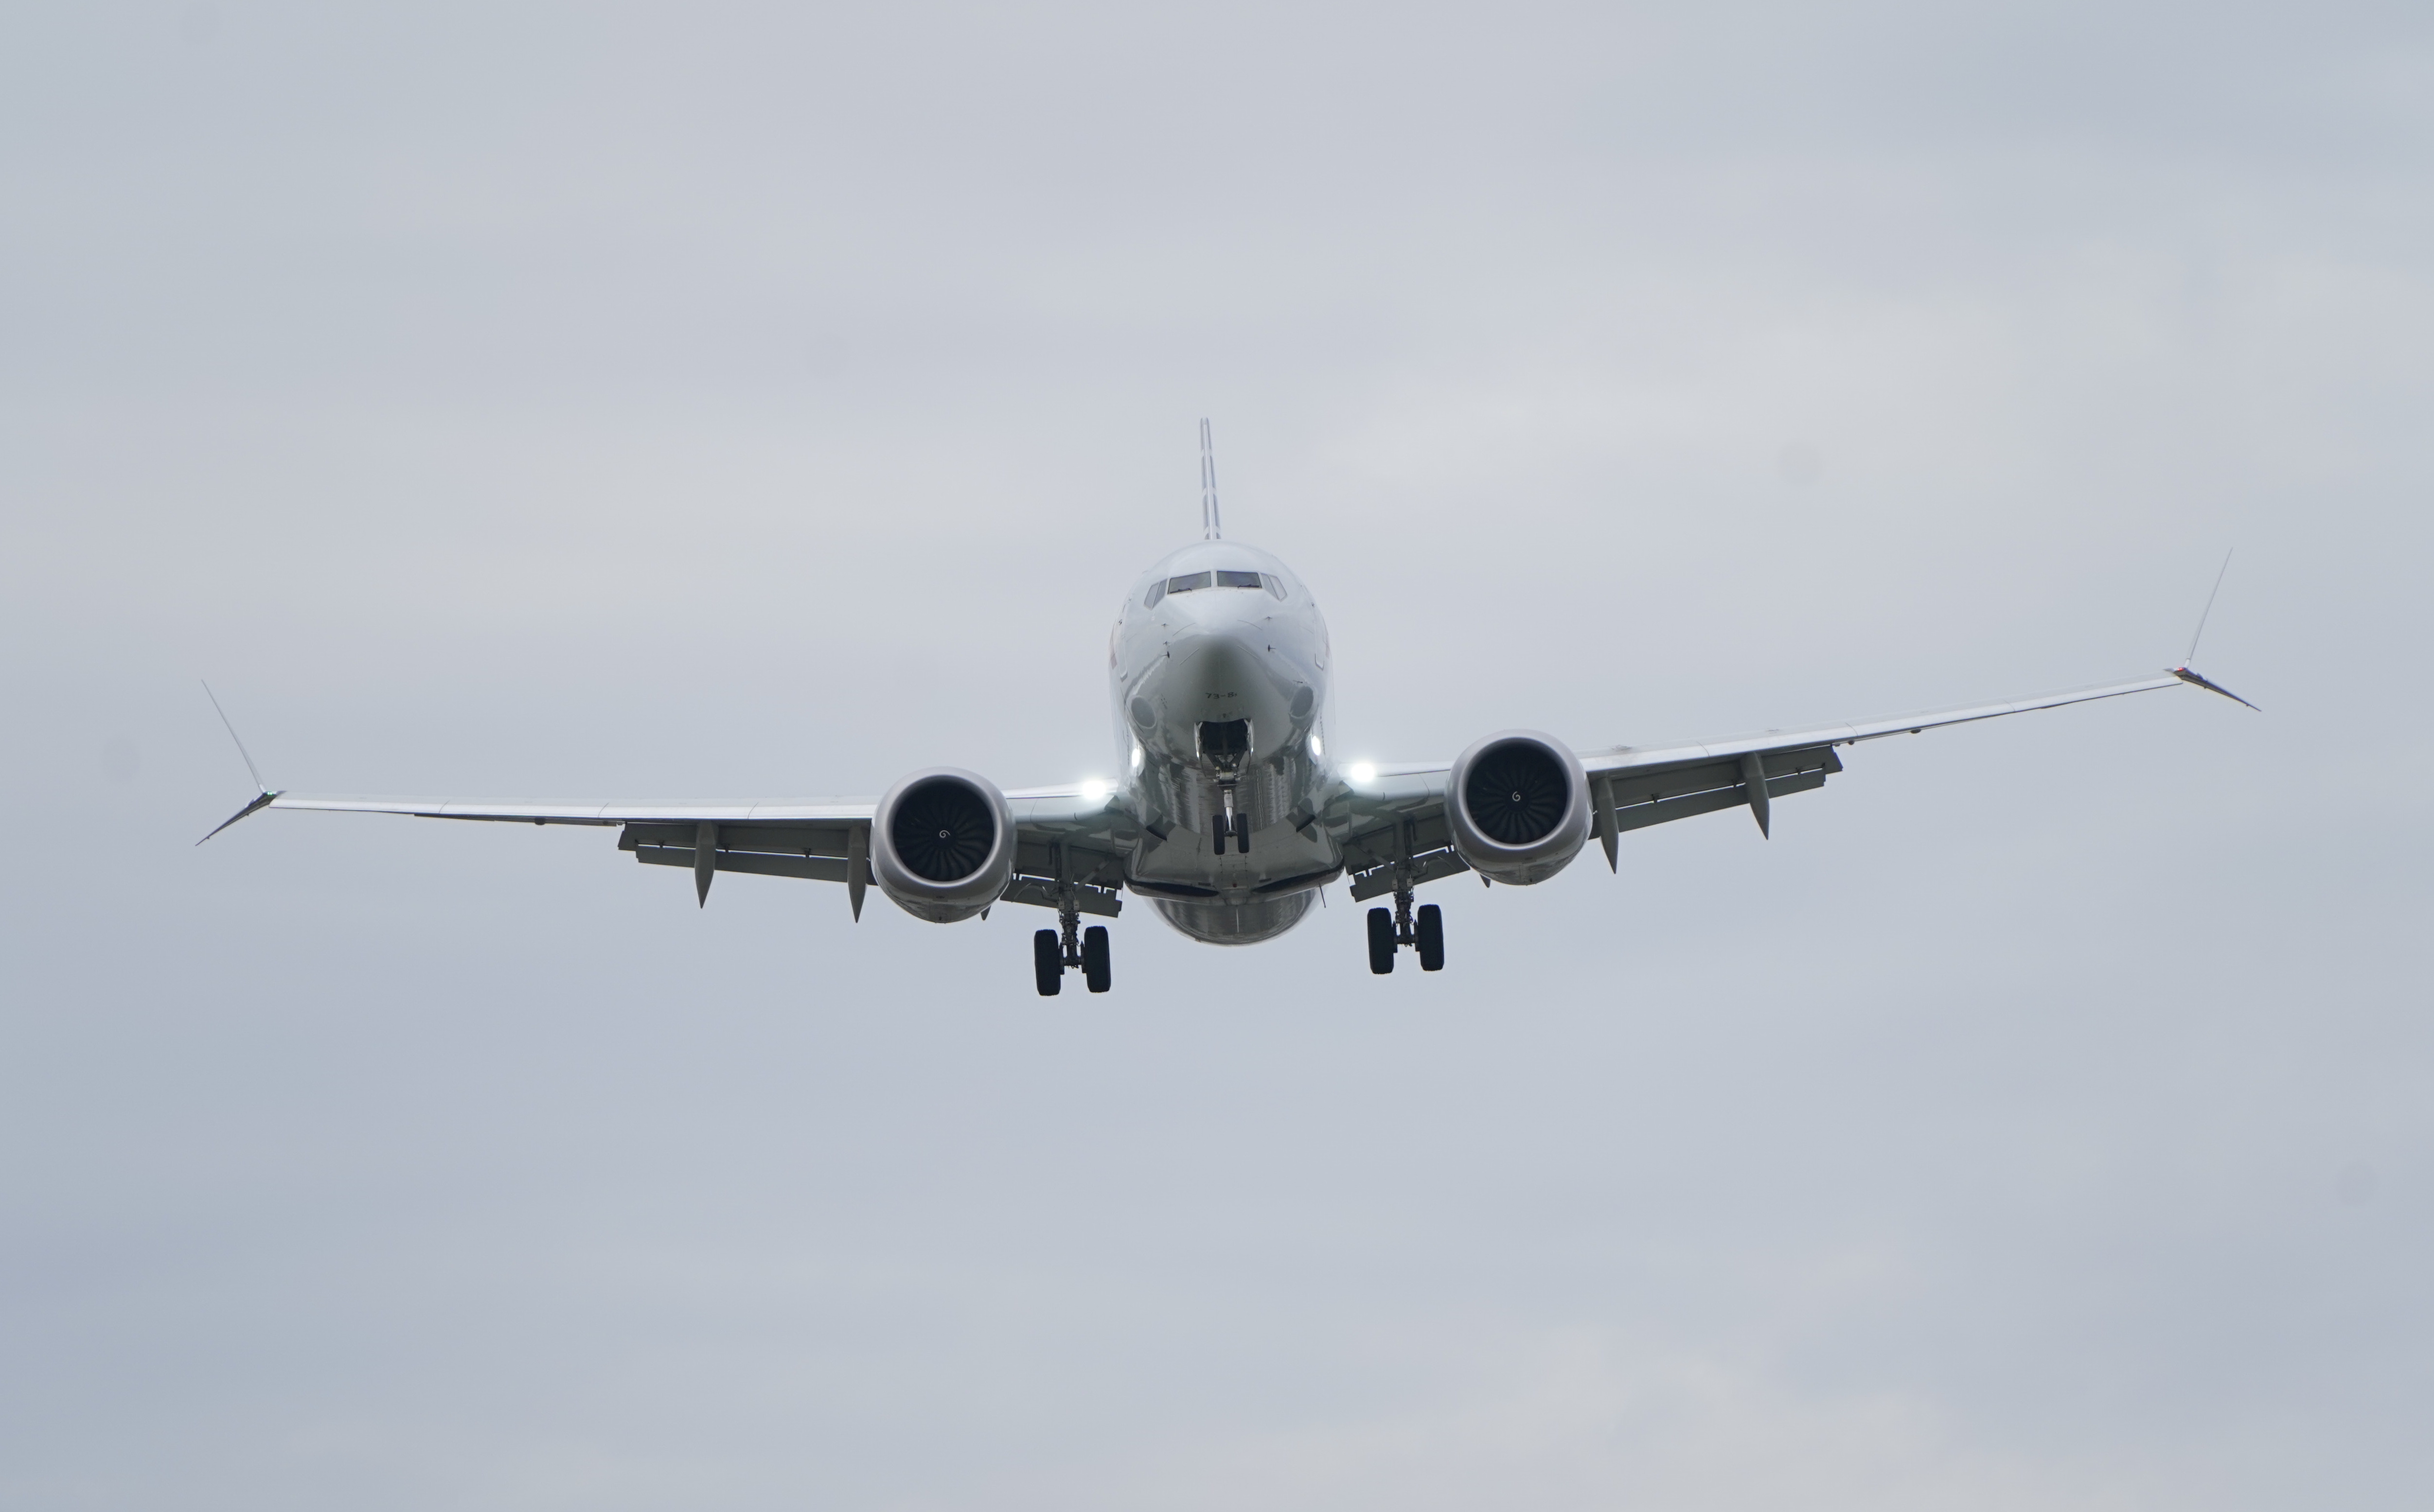 Transport aérien : choc social en vue sans nouvelles aides d'Etat (IATA)